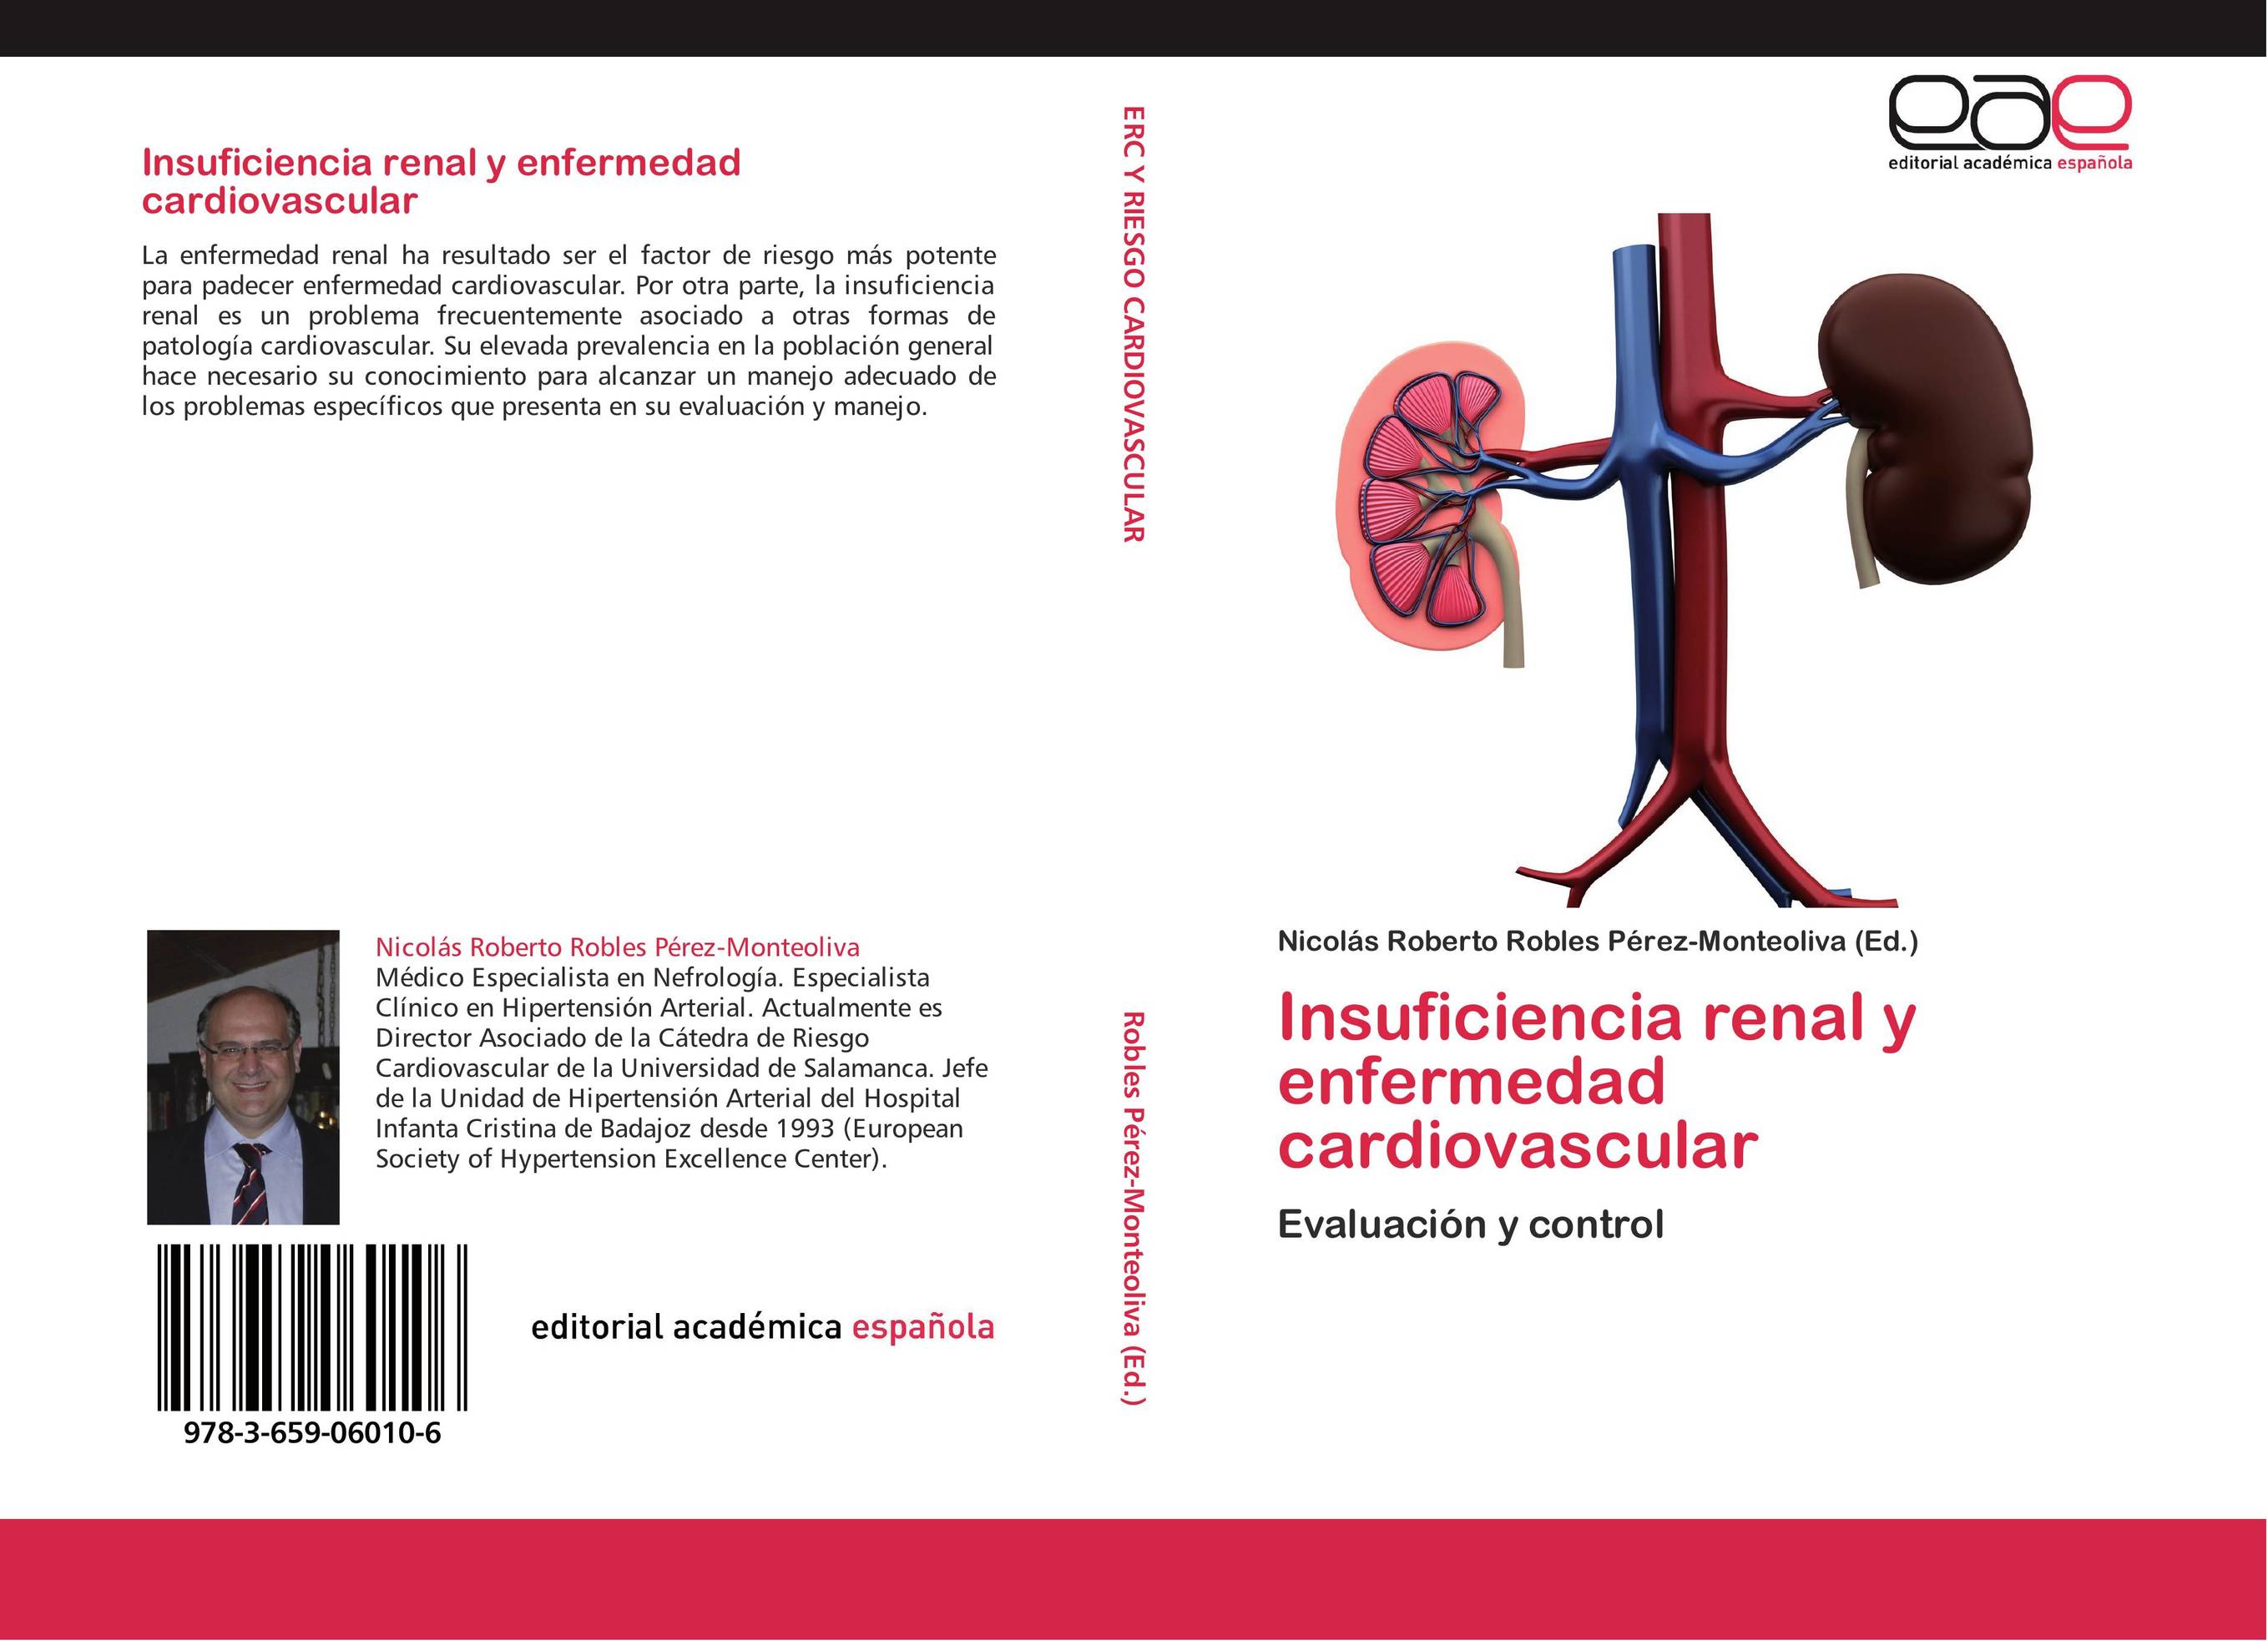 Insuficiencia renal y enfermedad cardiovascular